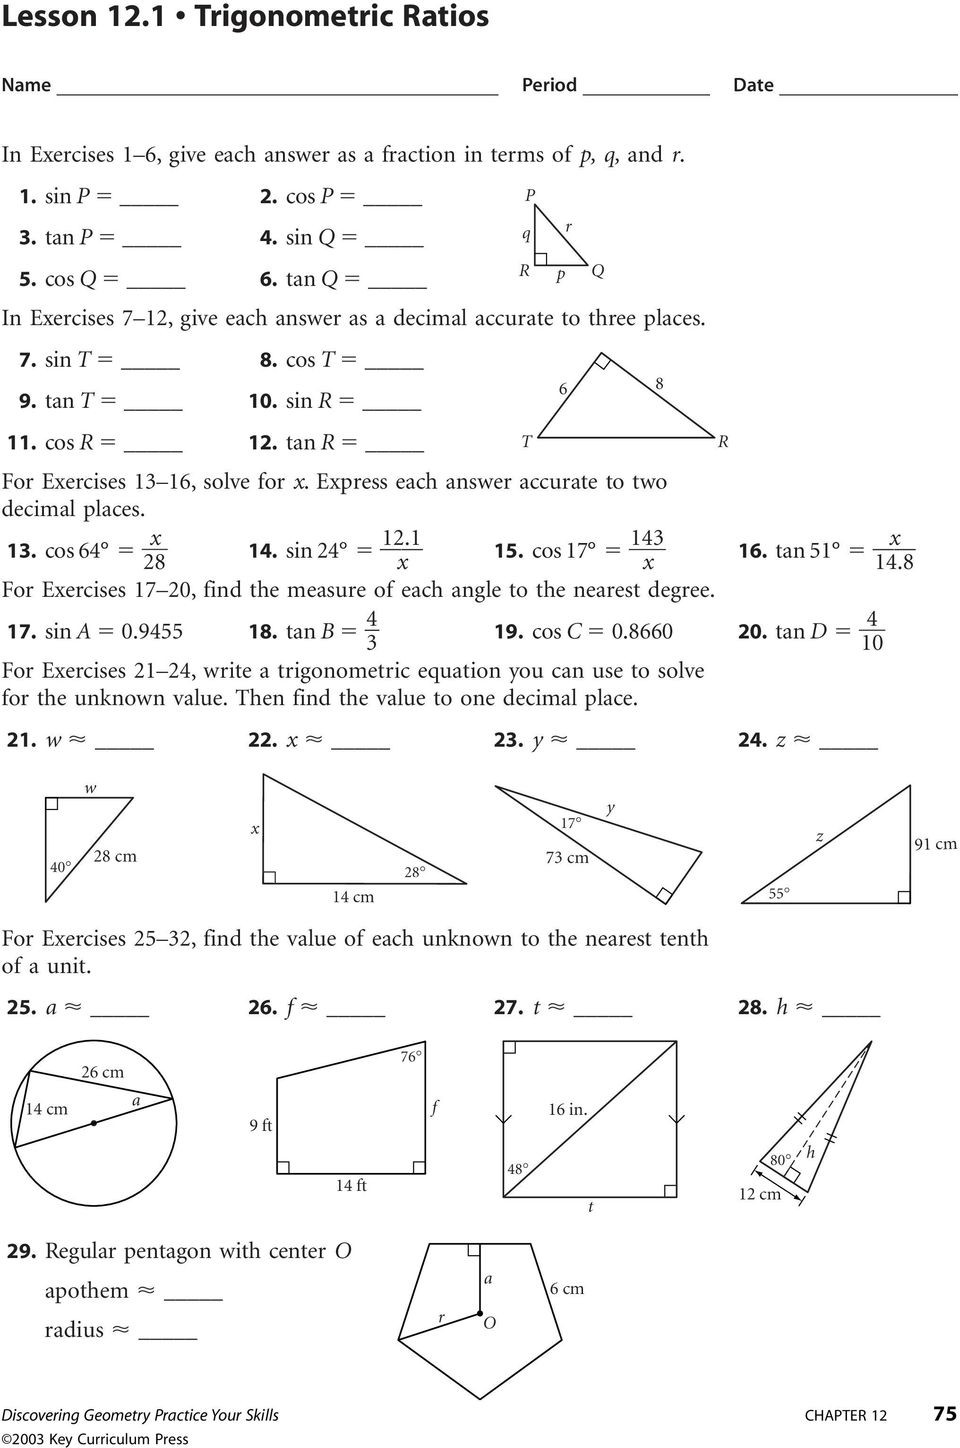 Trigonometric Ratios Worksheet Answers Trigonometry Ratios Worksheet – Colabug